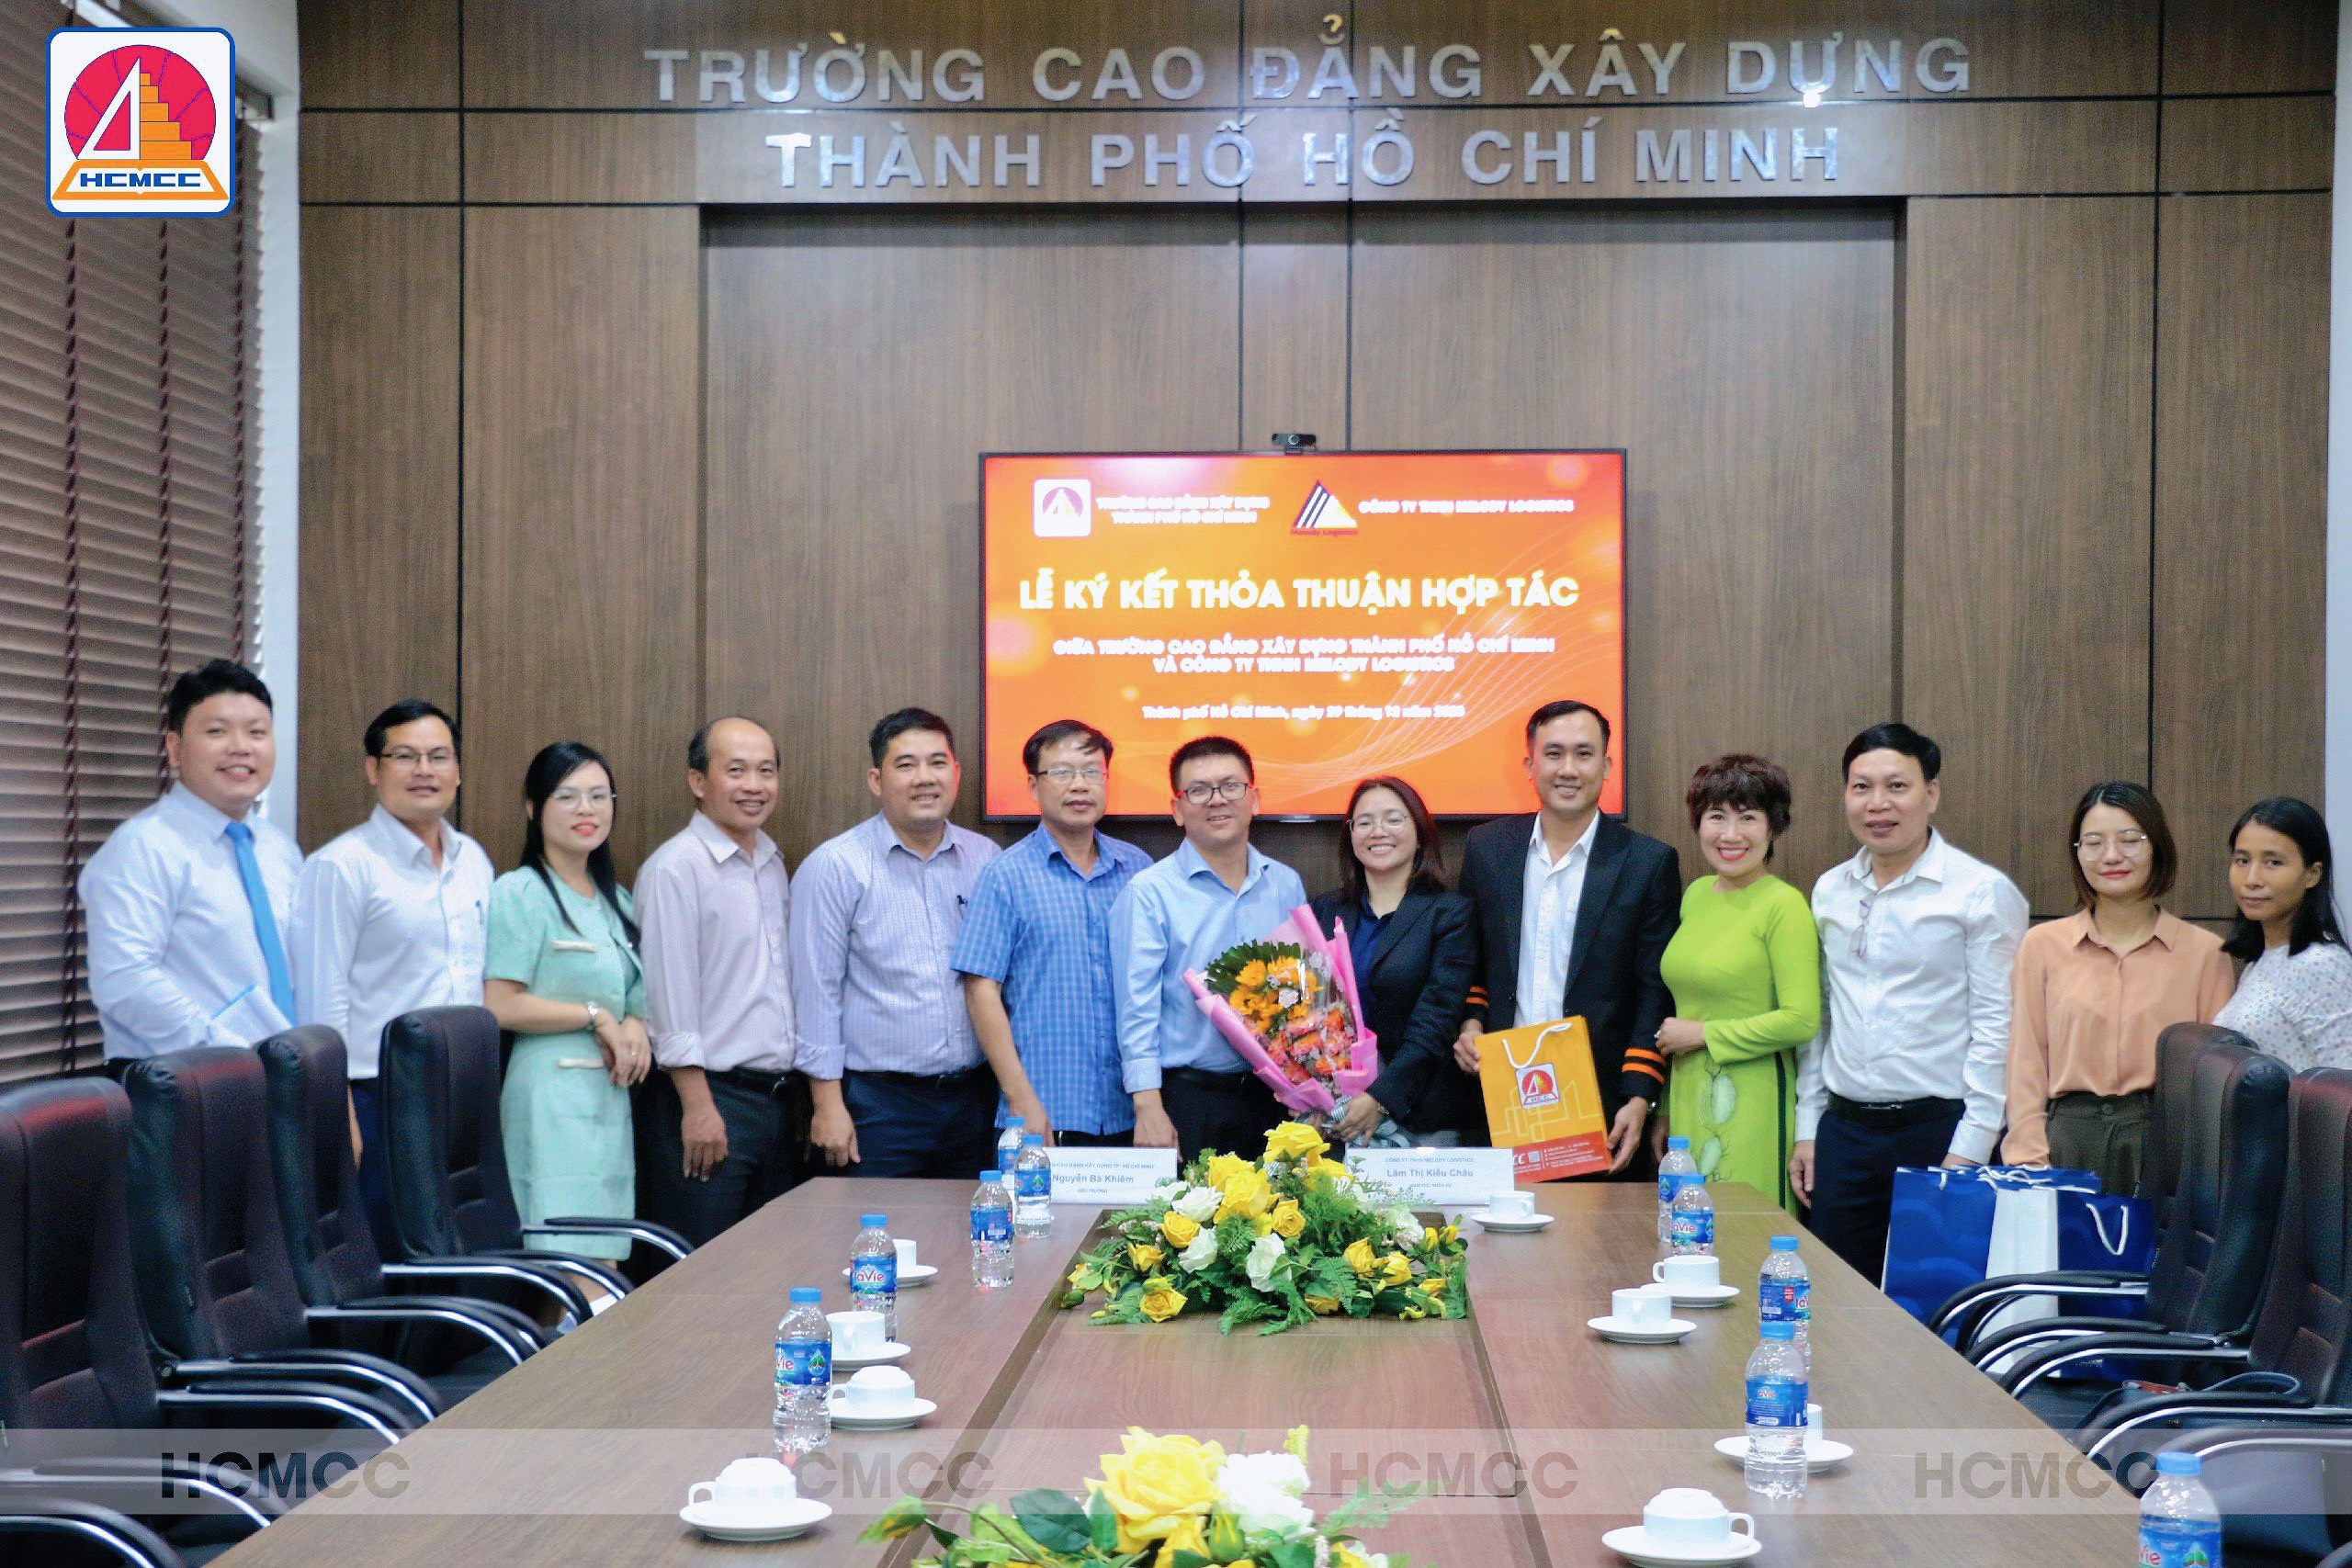 Lễ ký kết thỏa thuận hợp tác giữa Trường Cao đẳng Xây dựng Tp. Hồ Chí Minh và Công ty TNHH Melody Logistics